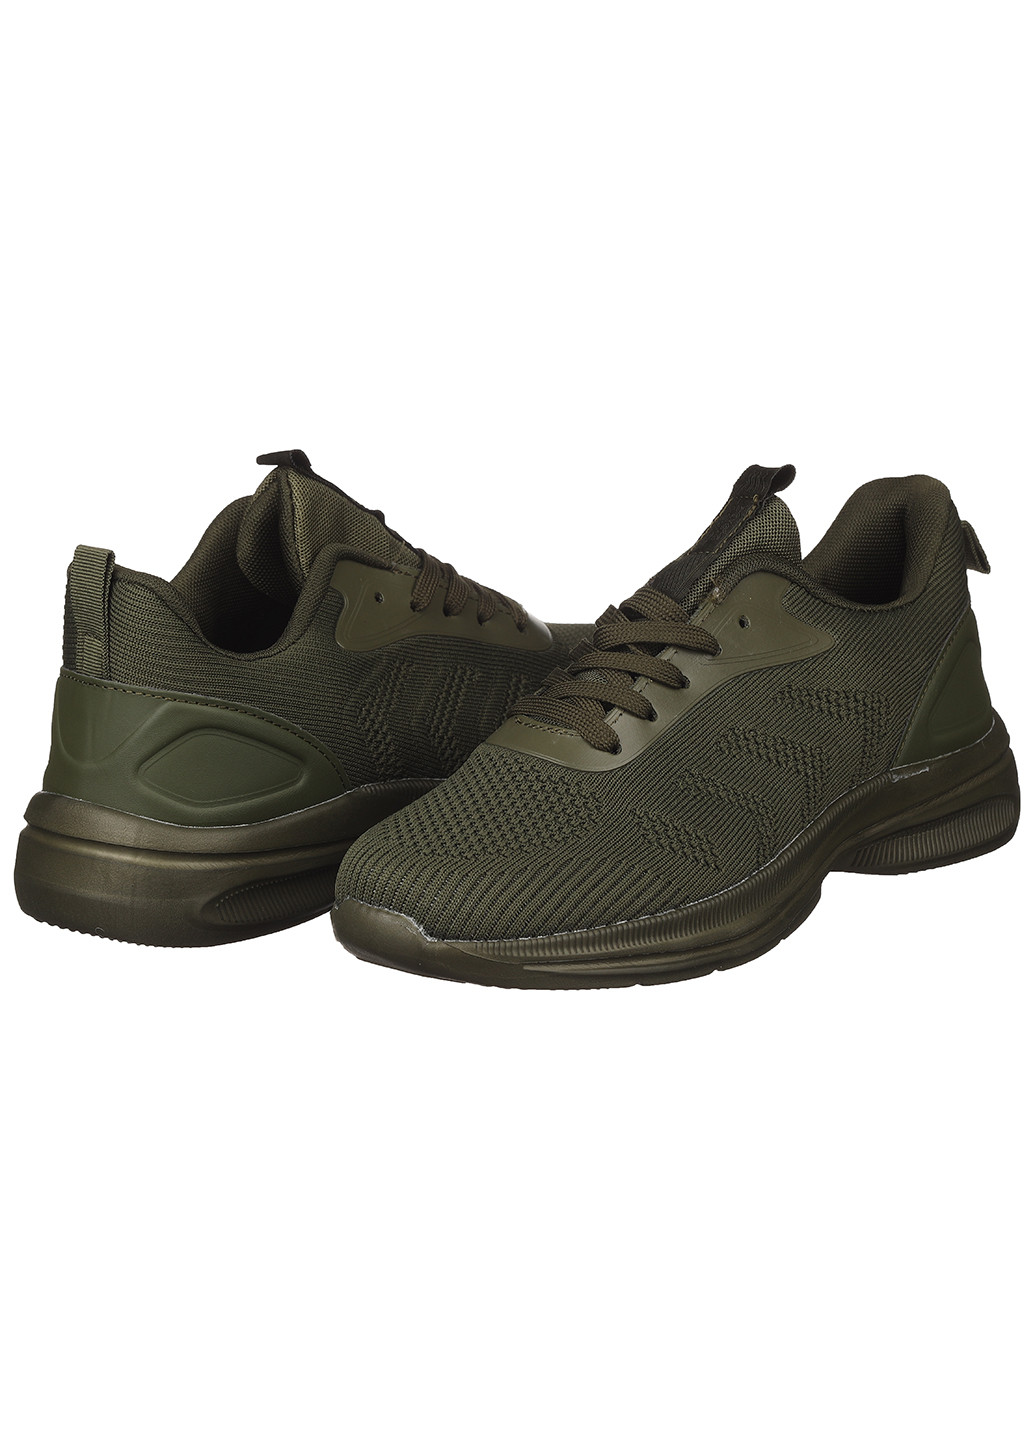 Зеленые демисезонные мужские кроссовки а5043-2 Bayota